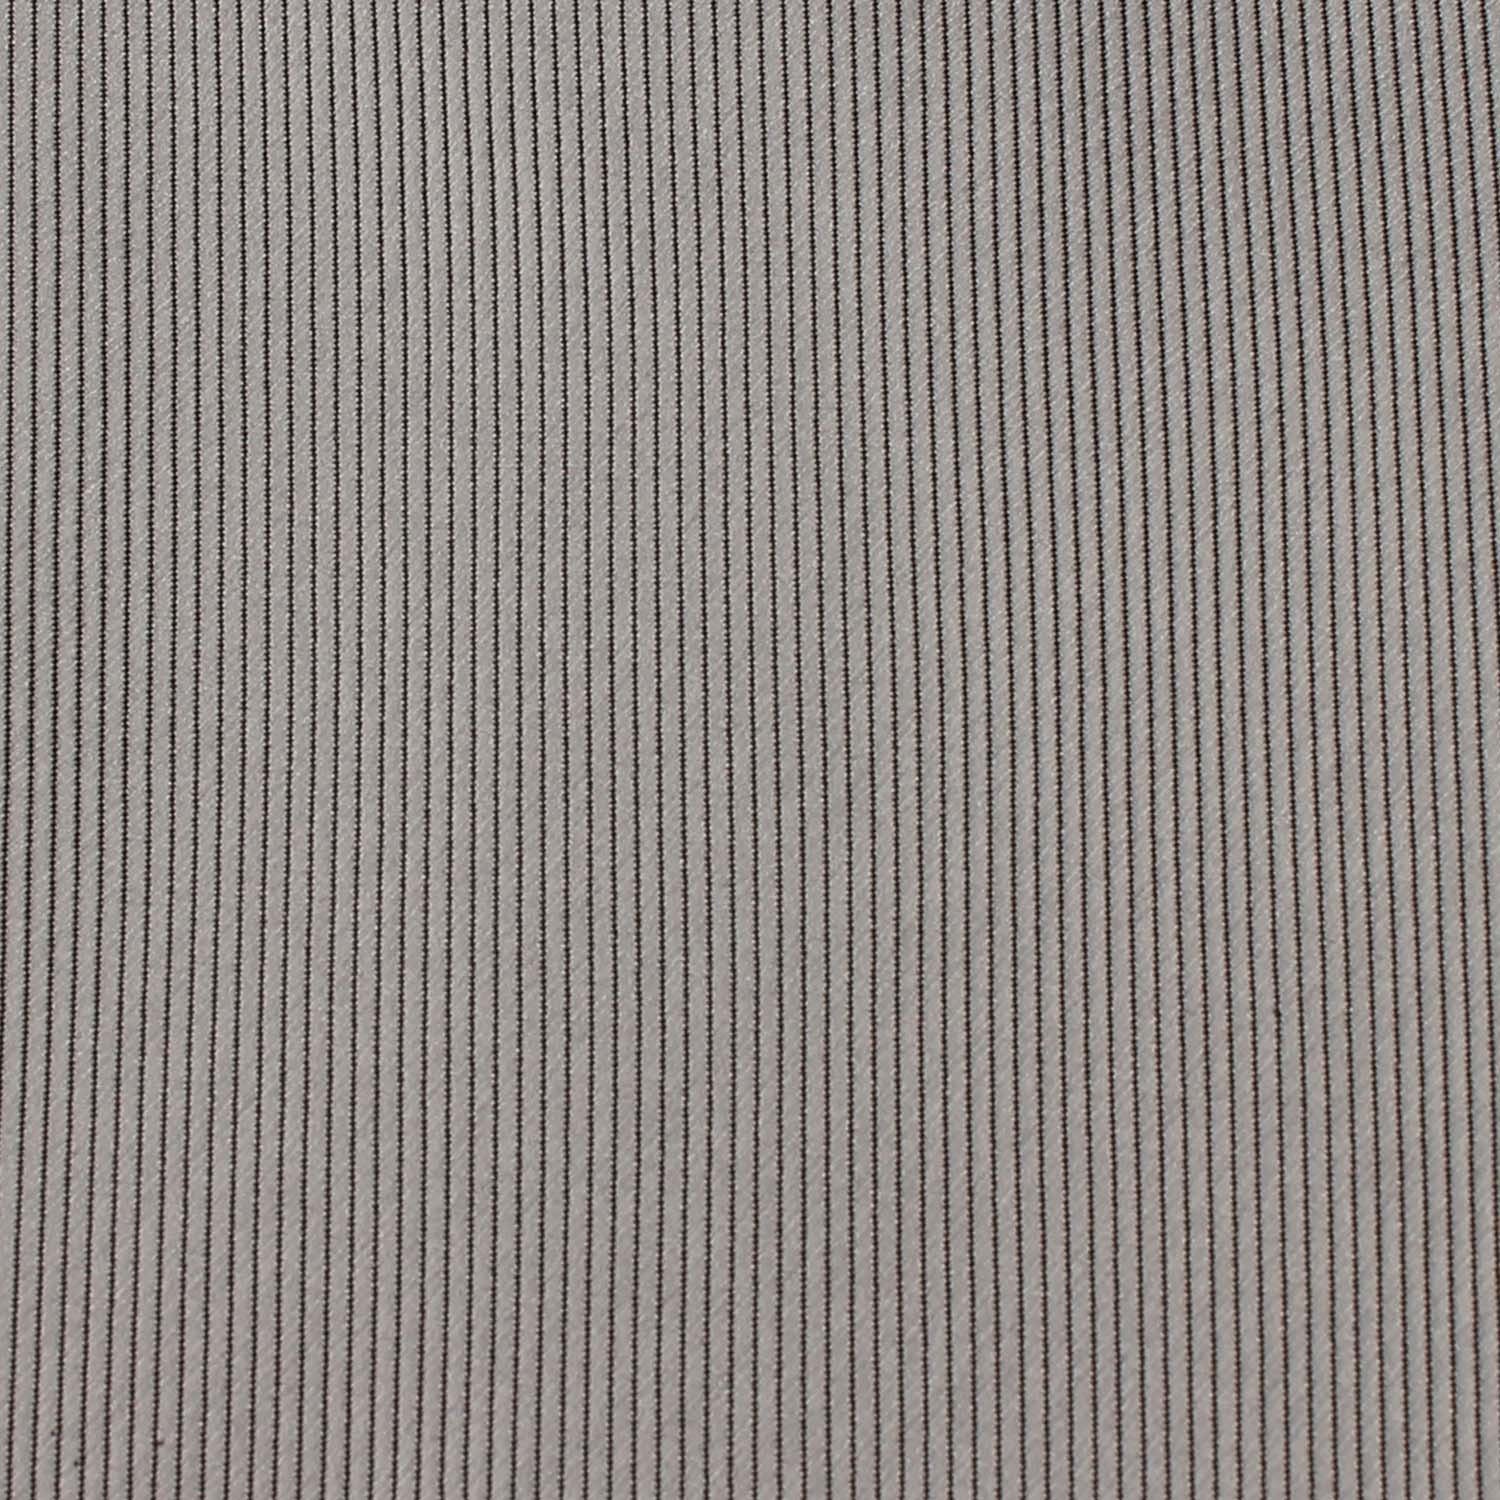 Silver Fabric Skinny Tie X519Silver Fabric Skinny Tie X519